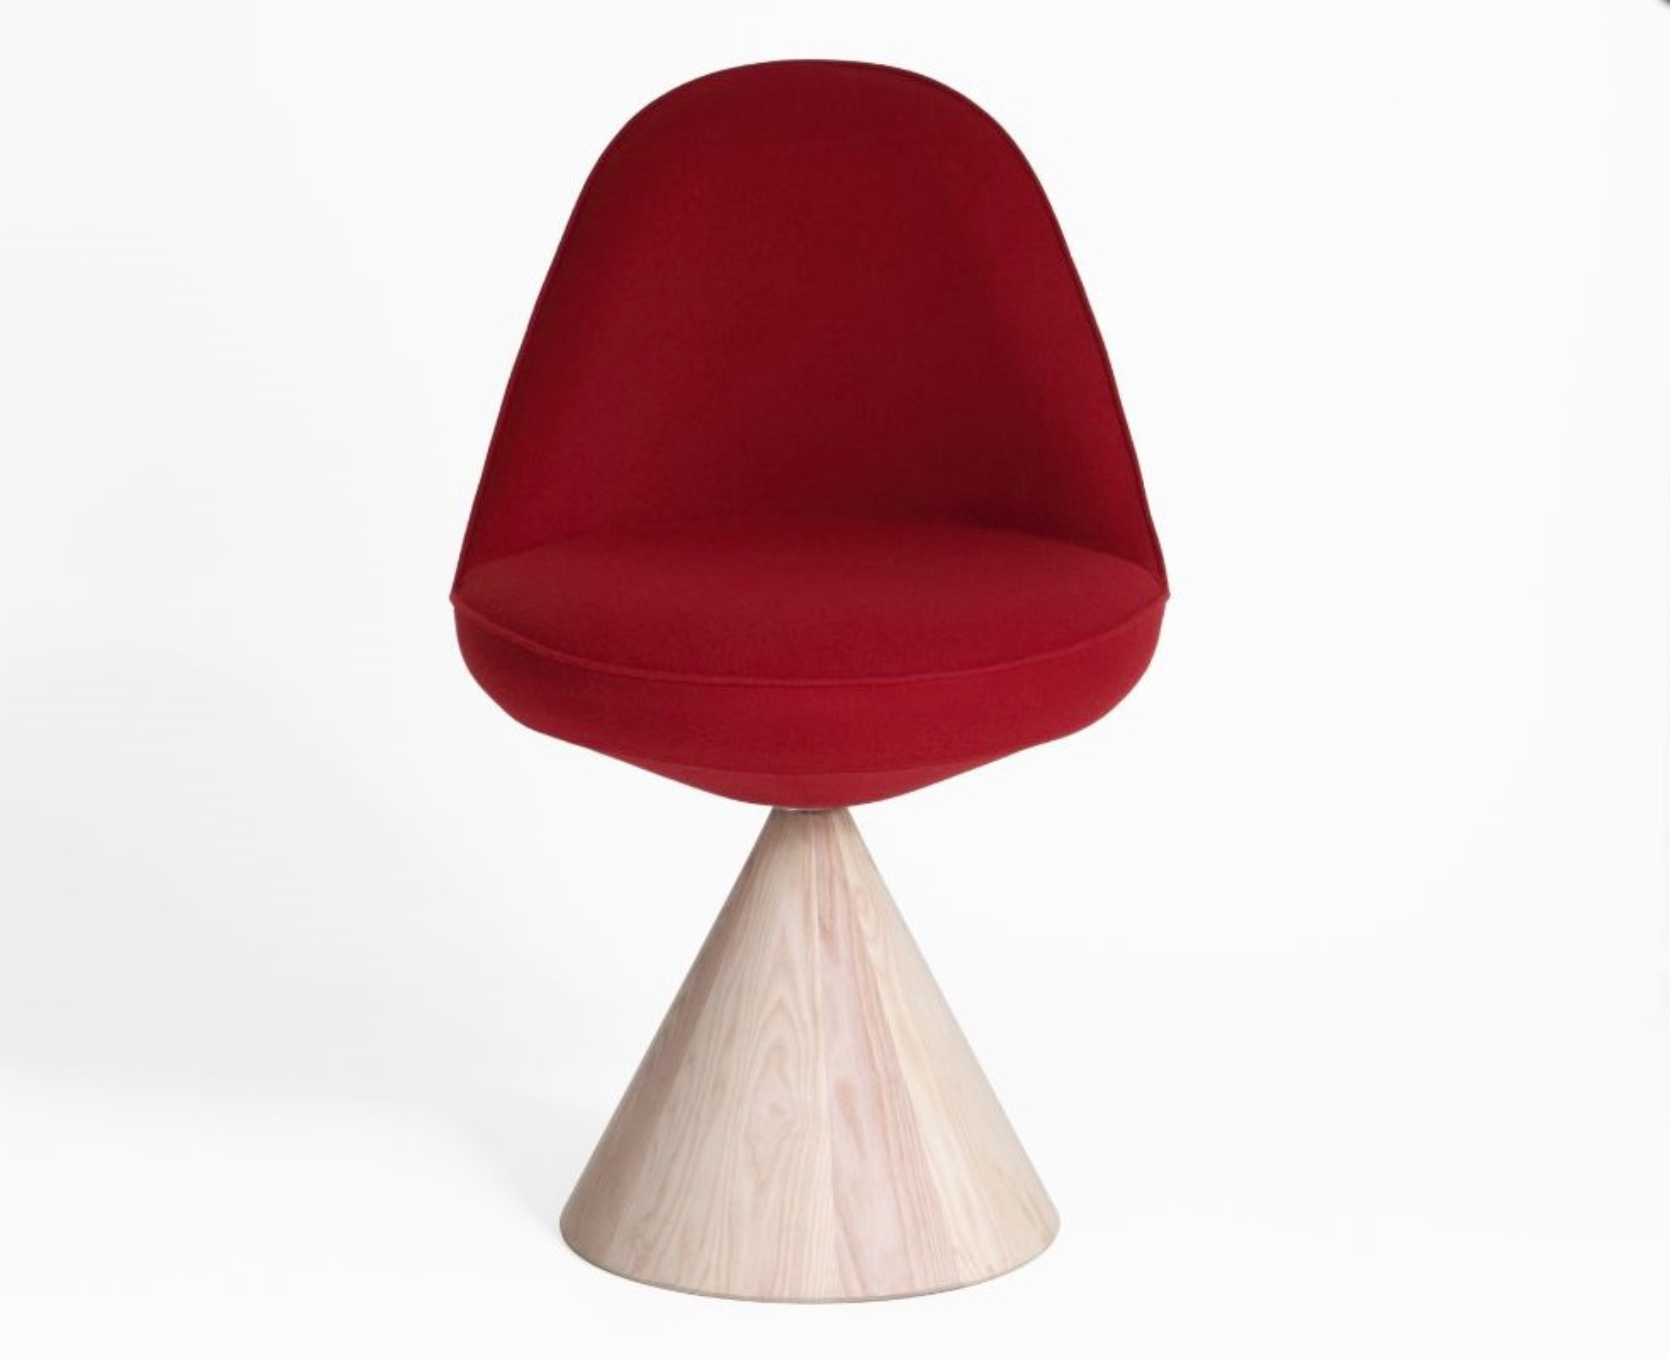 A cadeira com uma base giratória geométrica de madeira é o novo projeto da dupla ítalo-dinamarquesa GamFratesi assinou para Porro.